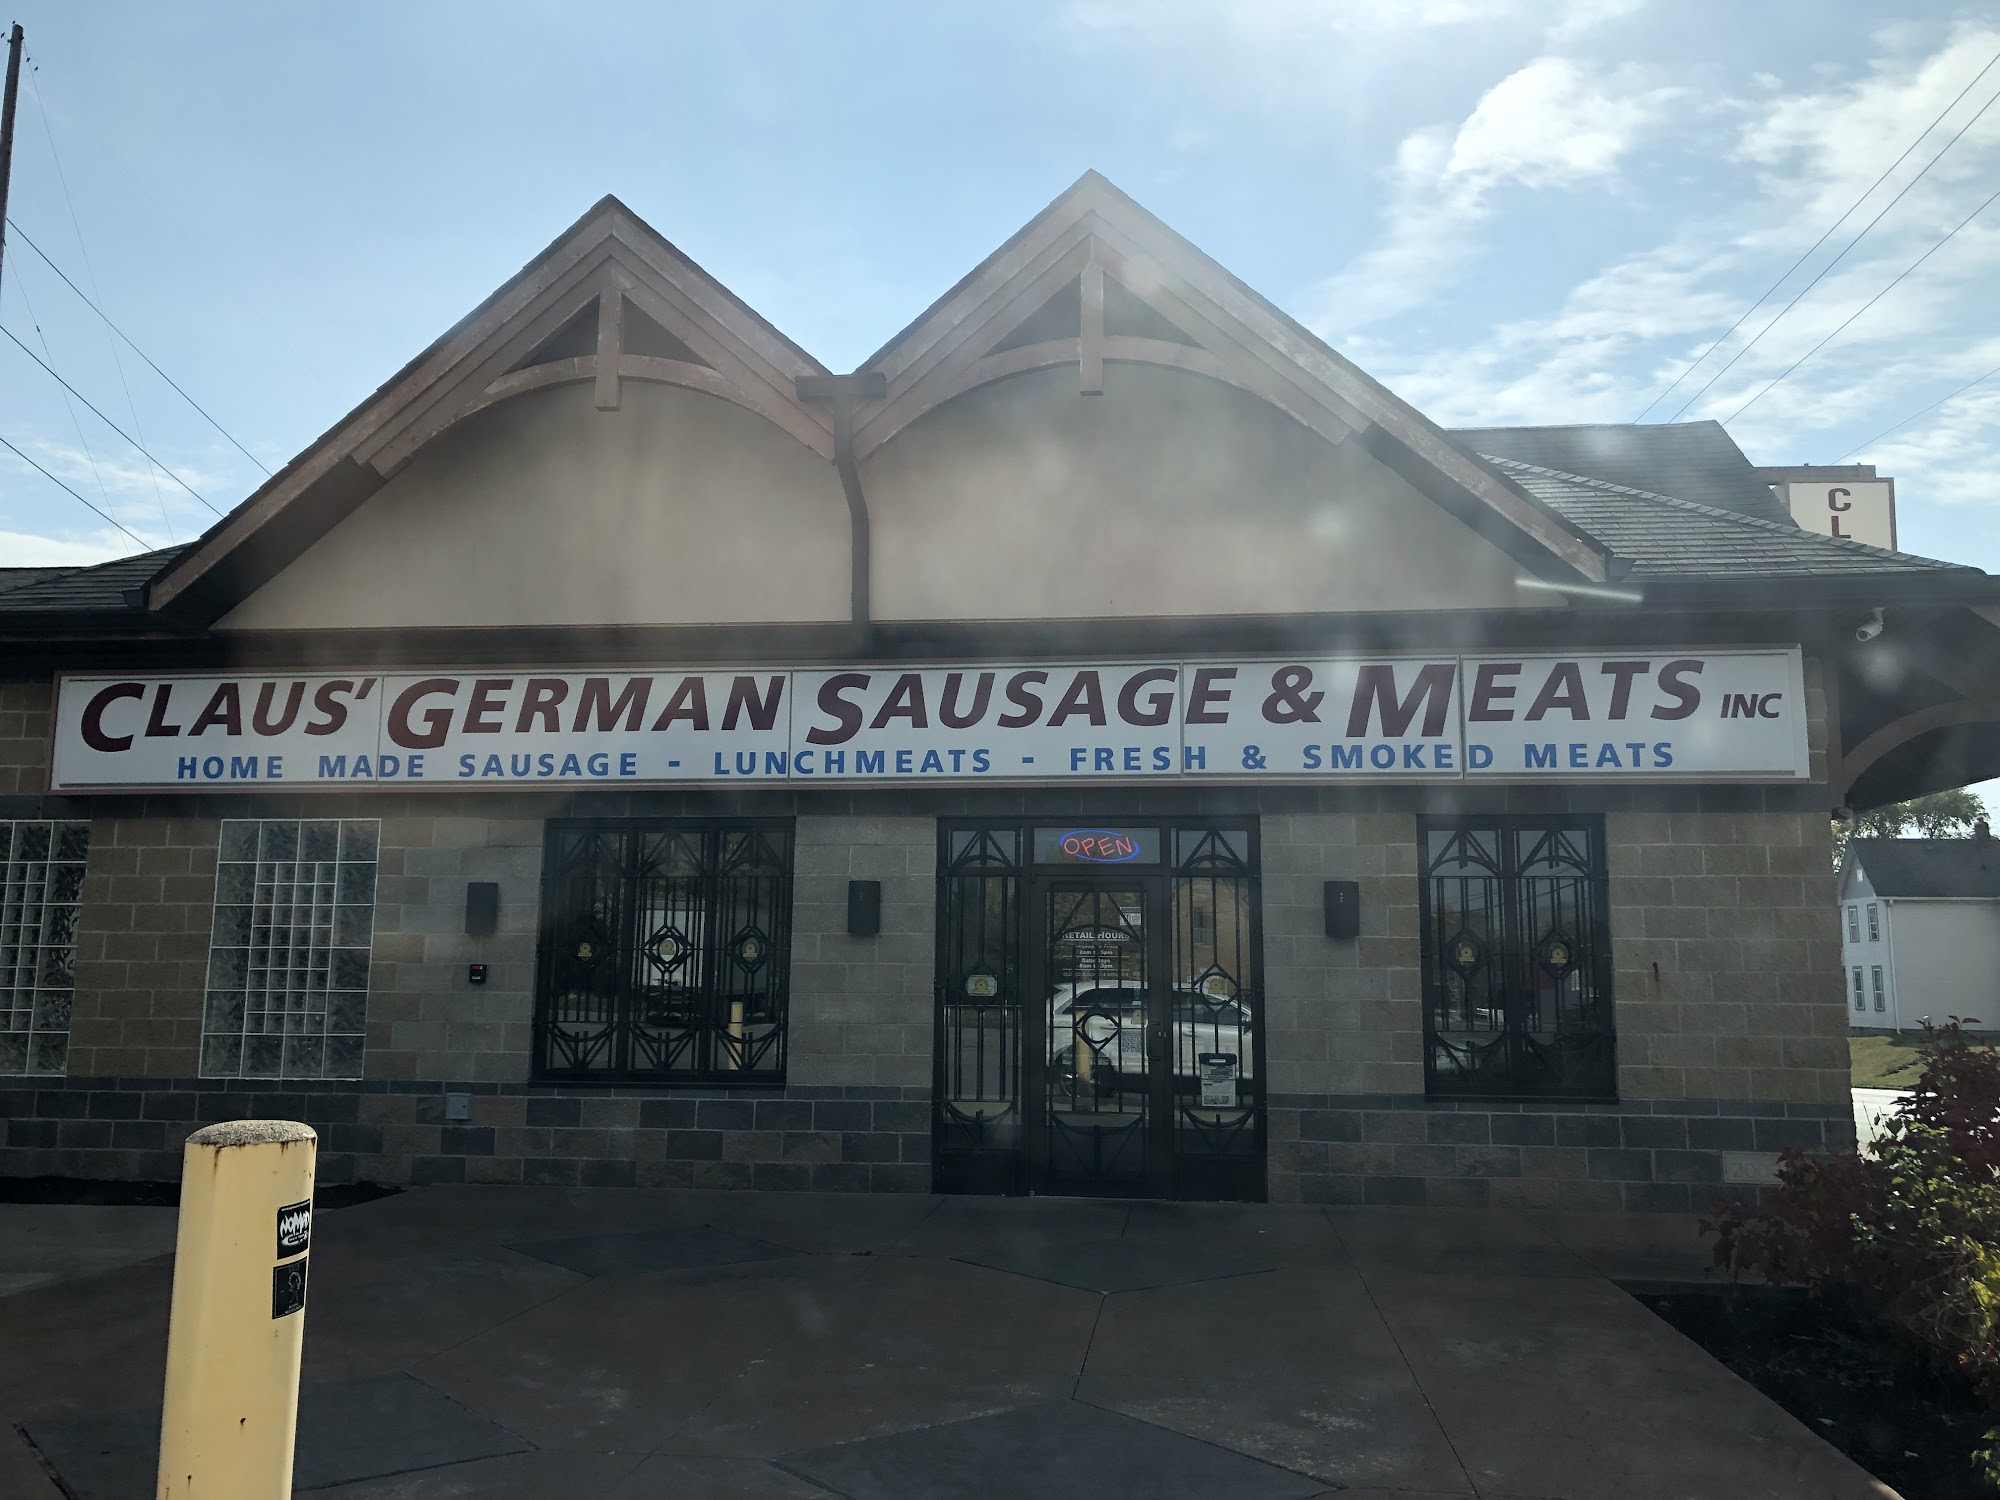 Claus' German Sausage & Meat